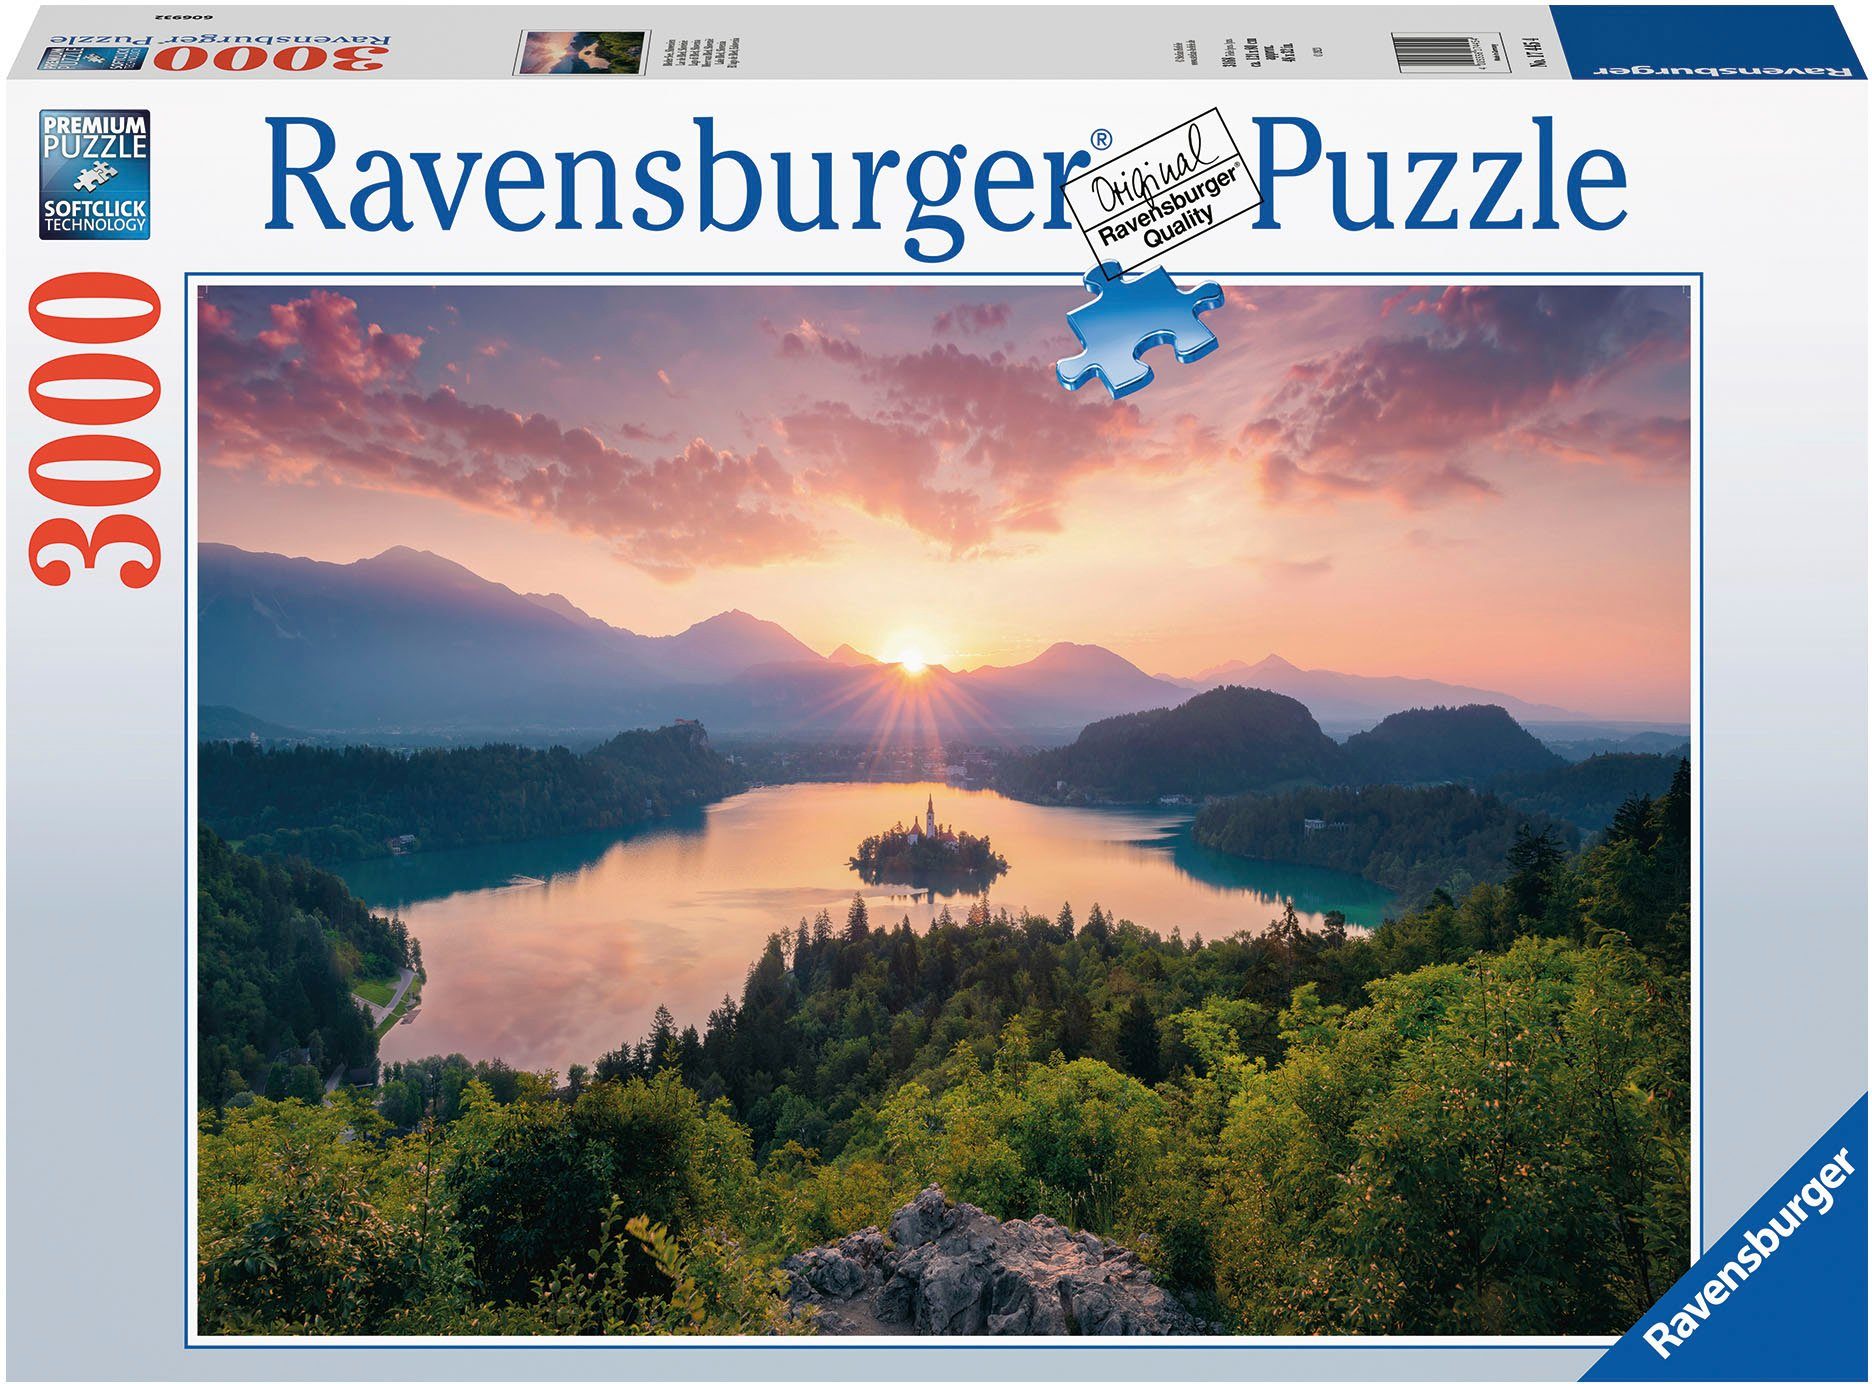 Made Puzzle in weltweit Slowenien, Bleder FSC®- See, 3000 Germany; schützt Wald Ravensburger - Puzzleteile,